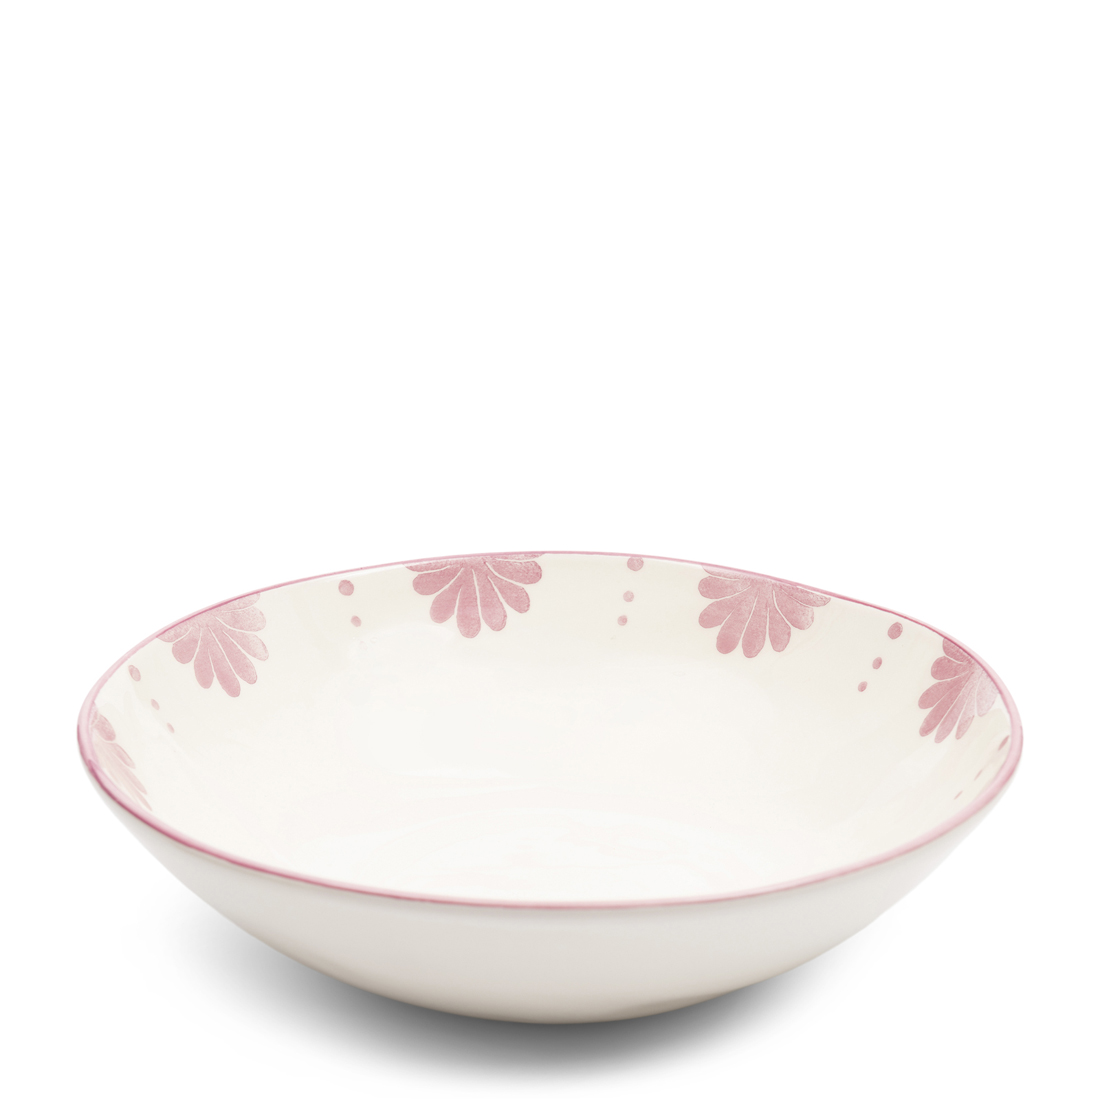 Riviera Maison Serveerschaal wit porselein met roze print - Menton diepe schaal voor serveren van salade of brood